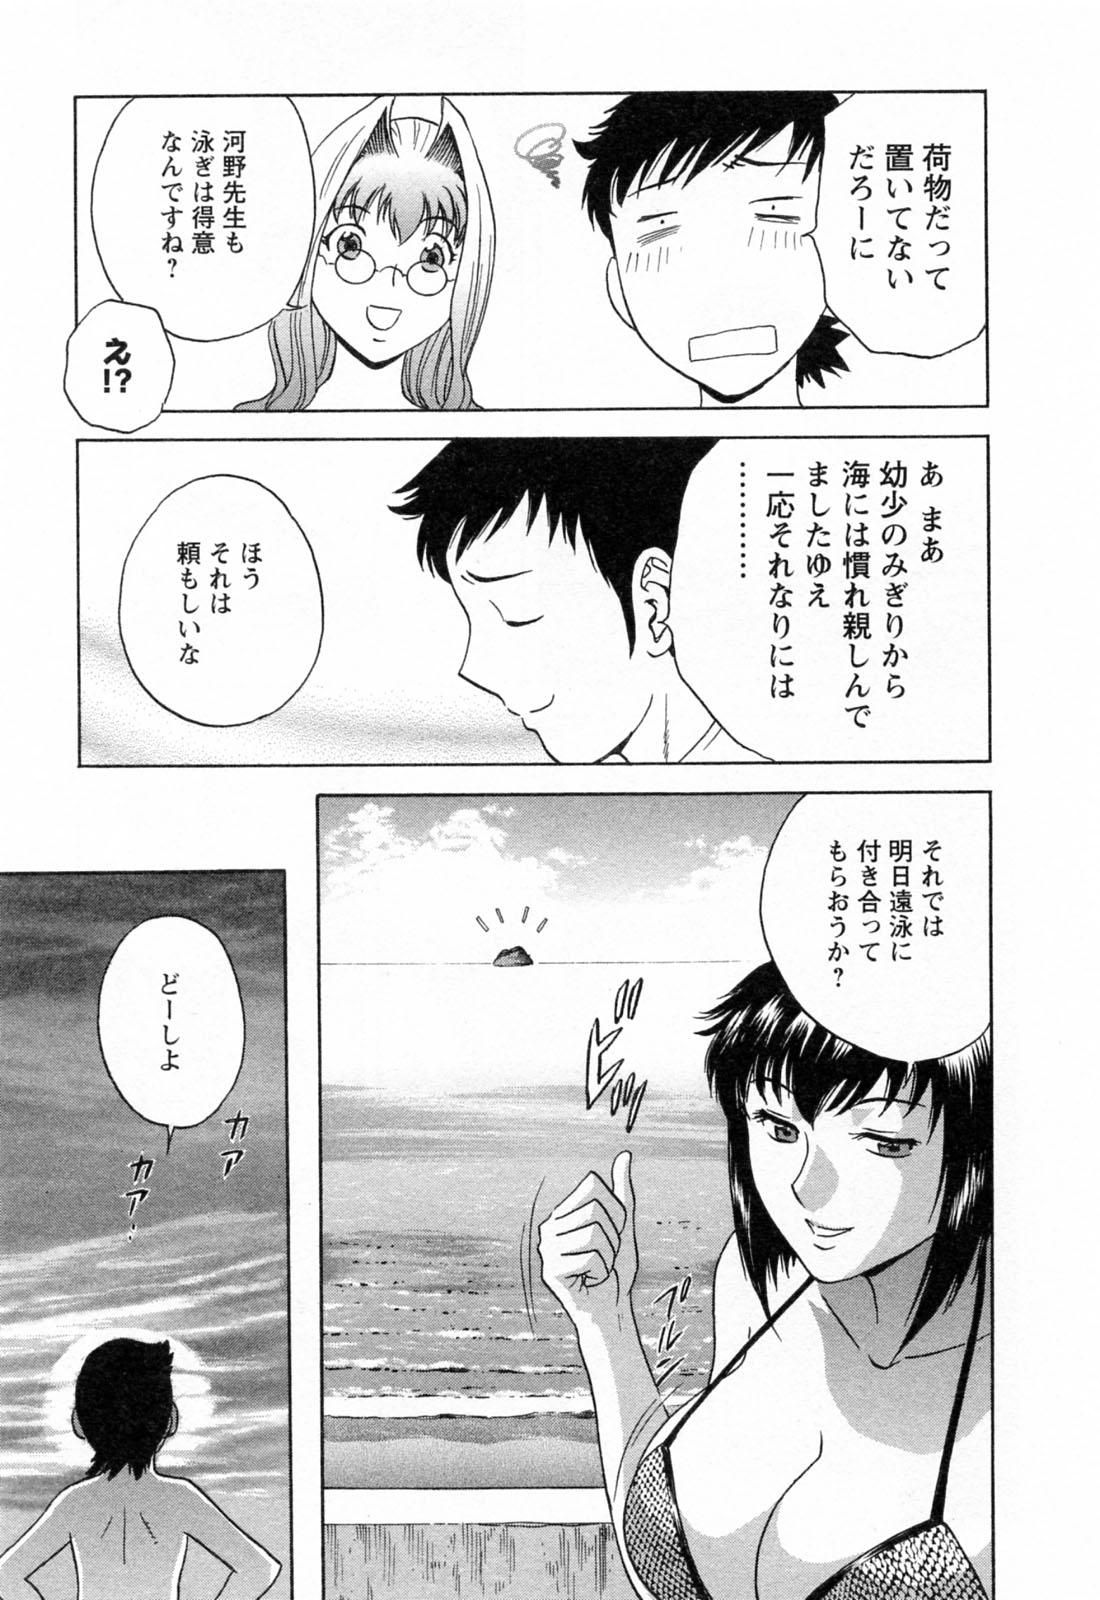 [Hidemaru] Mo-Retsu! Boin Sensei (Boing Boing Teacher) Vol.4 98